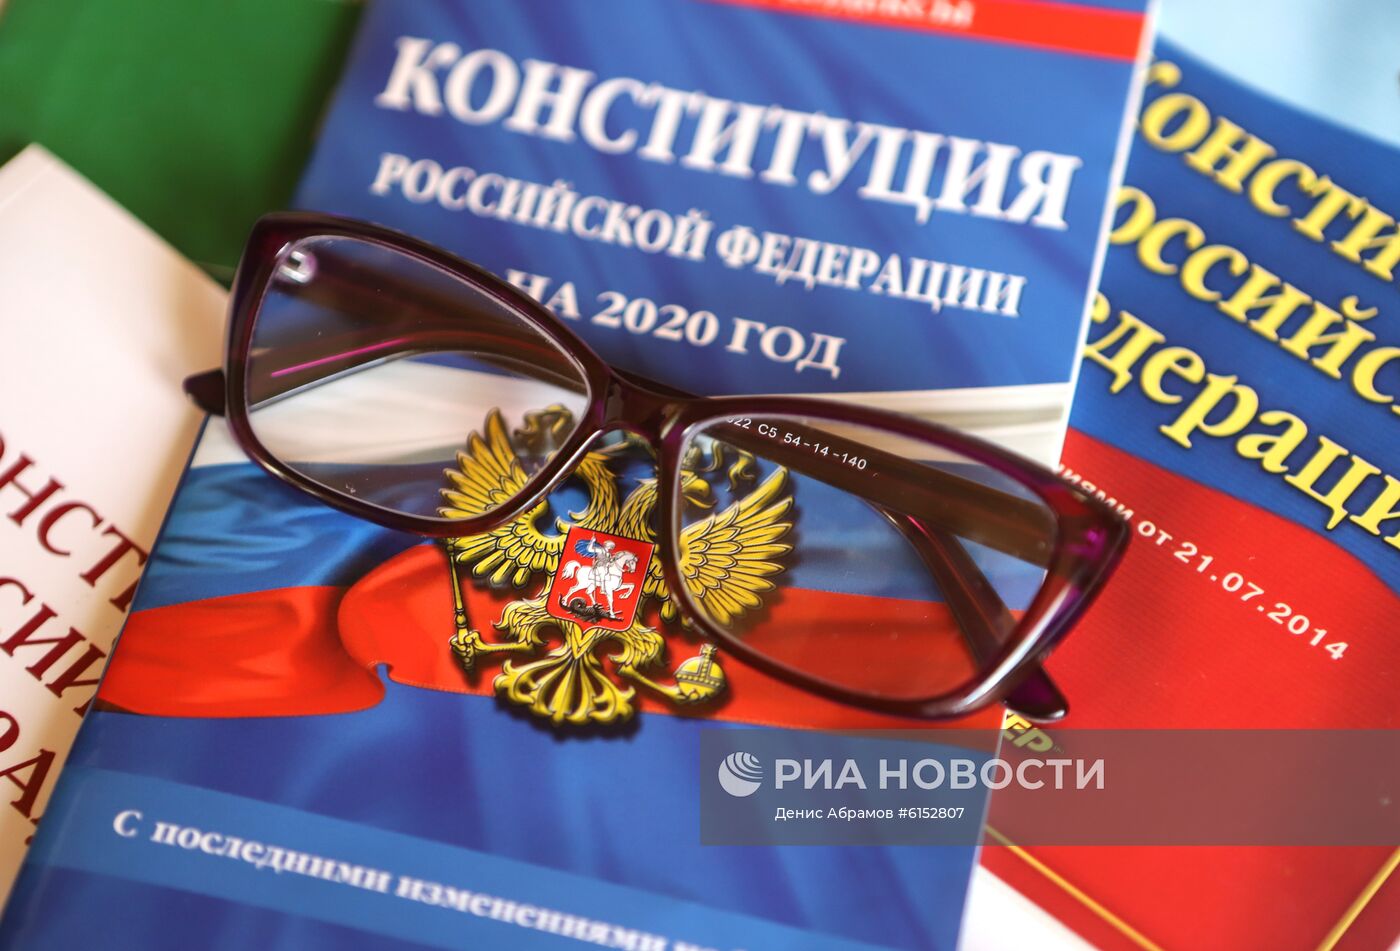  Конституция Российской Федерации 